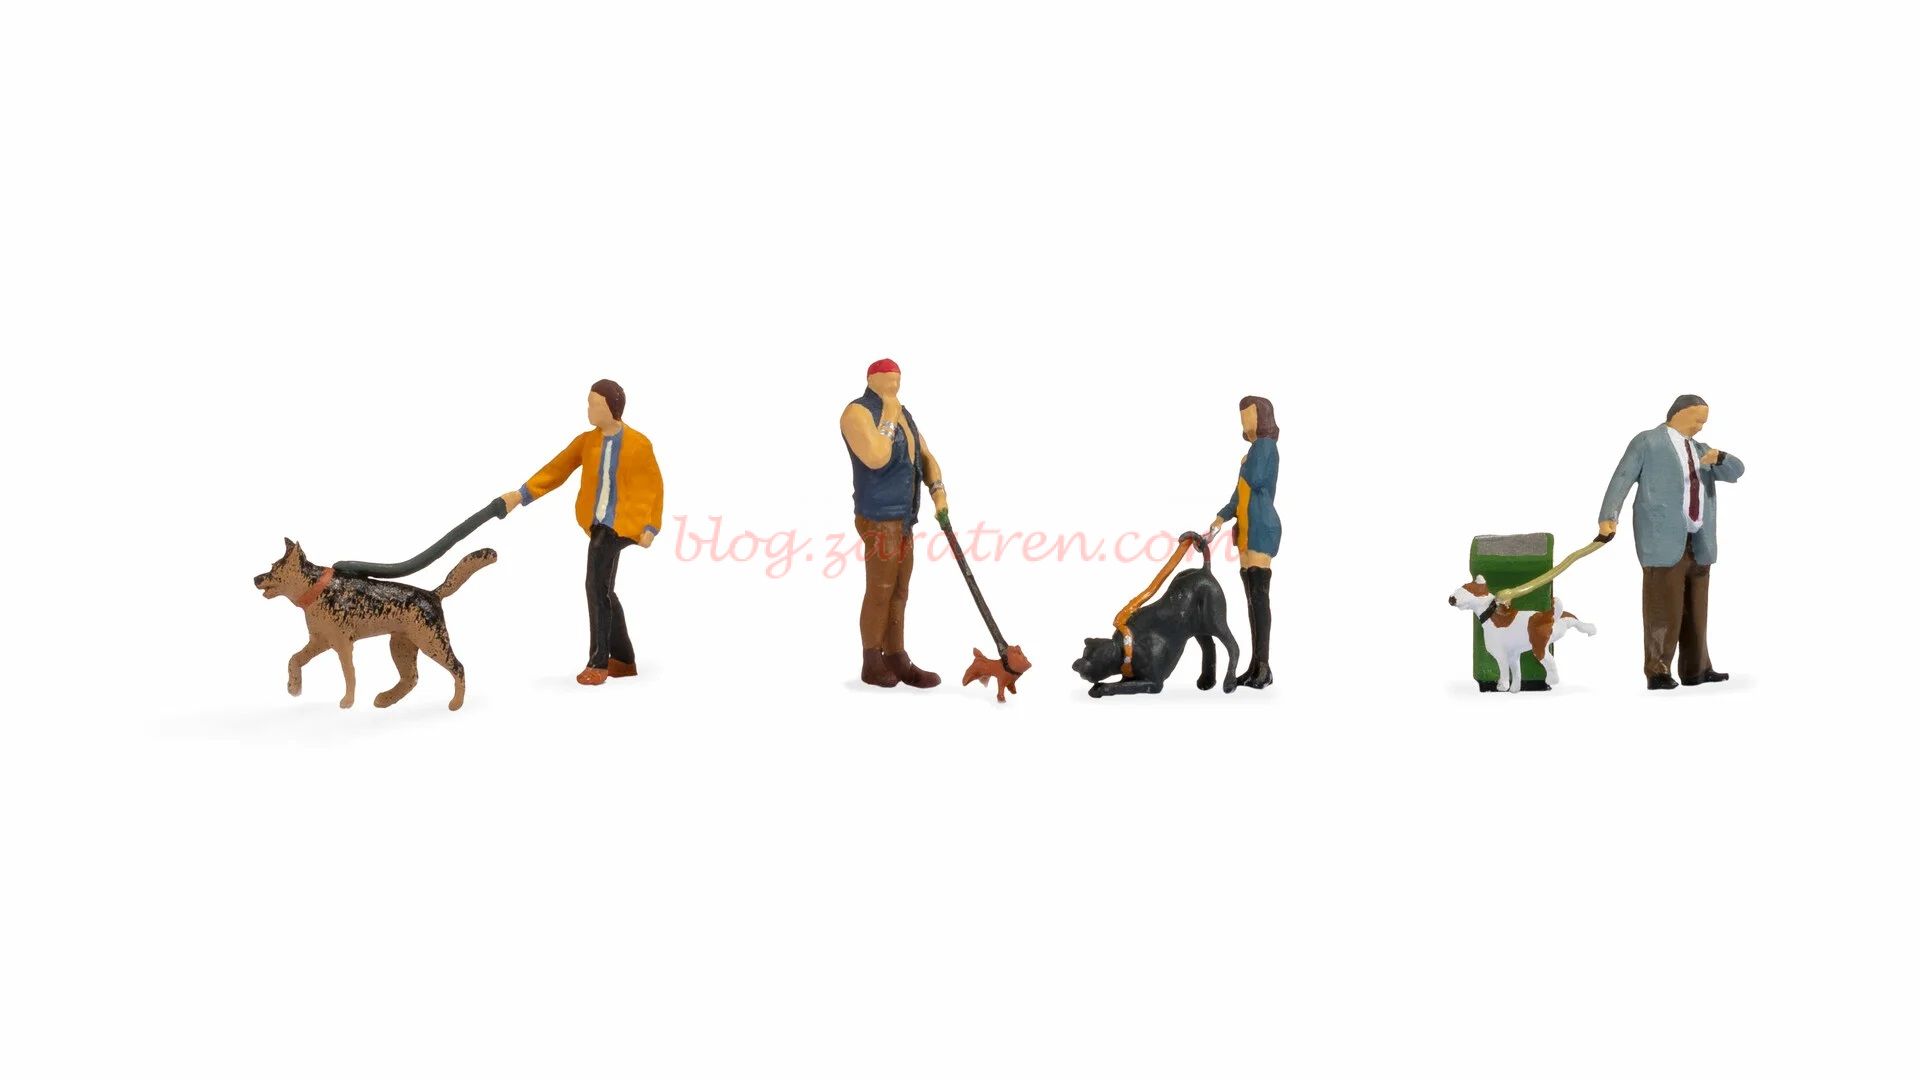 Noch – Personas paseando a perros, cuatro figuras, Escala H0, Ref: 15471.